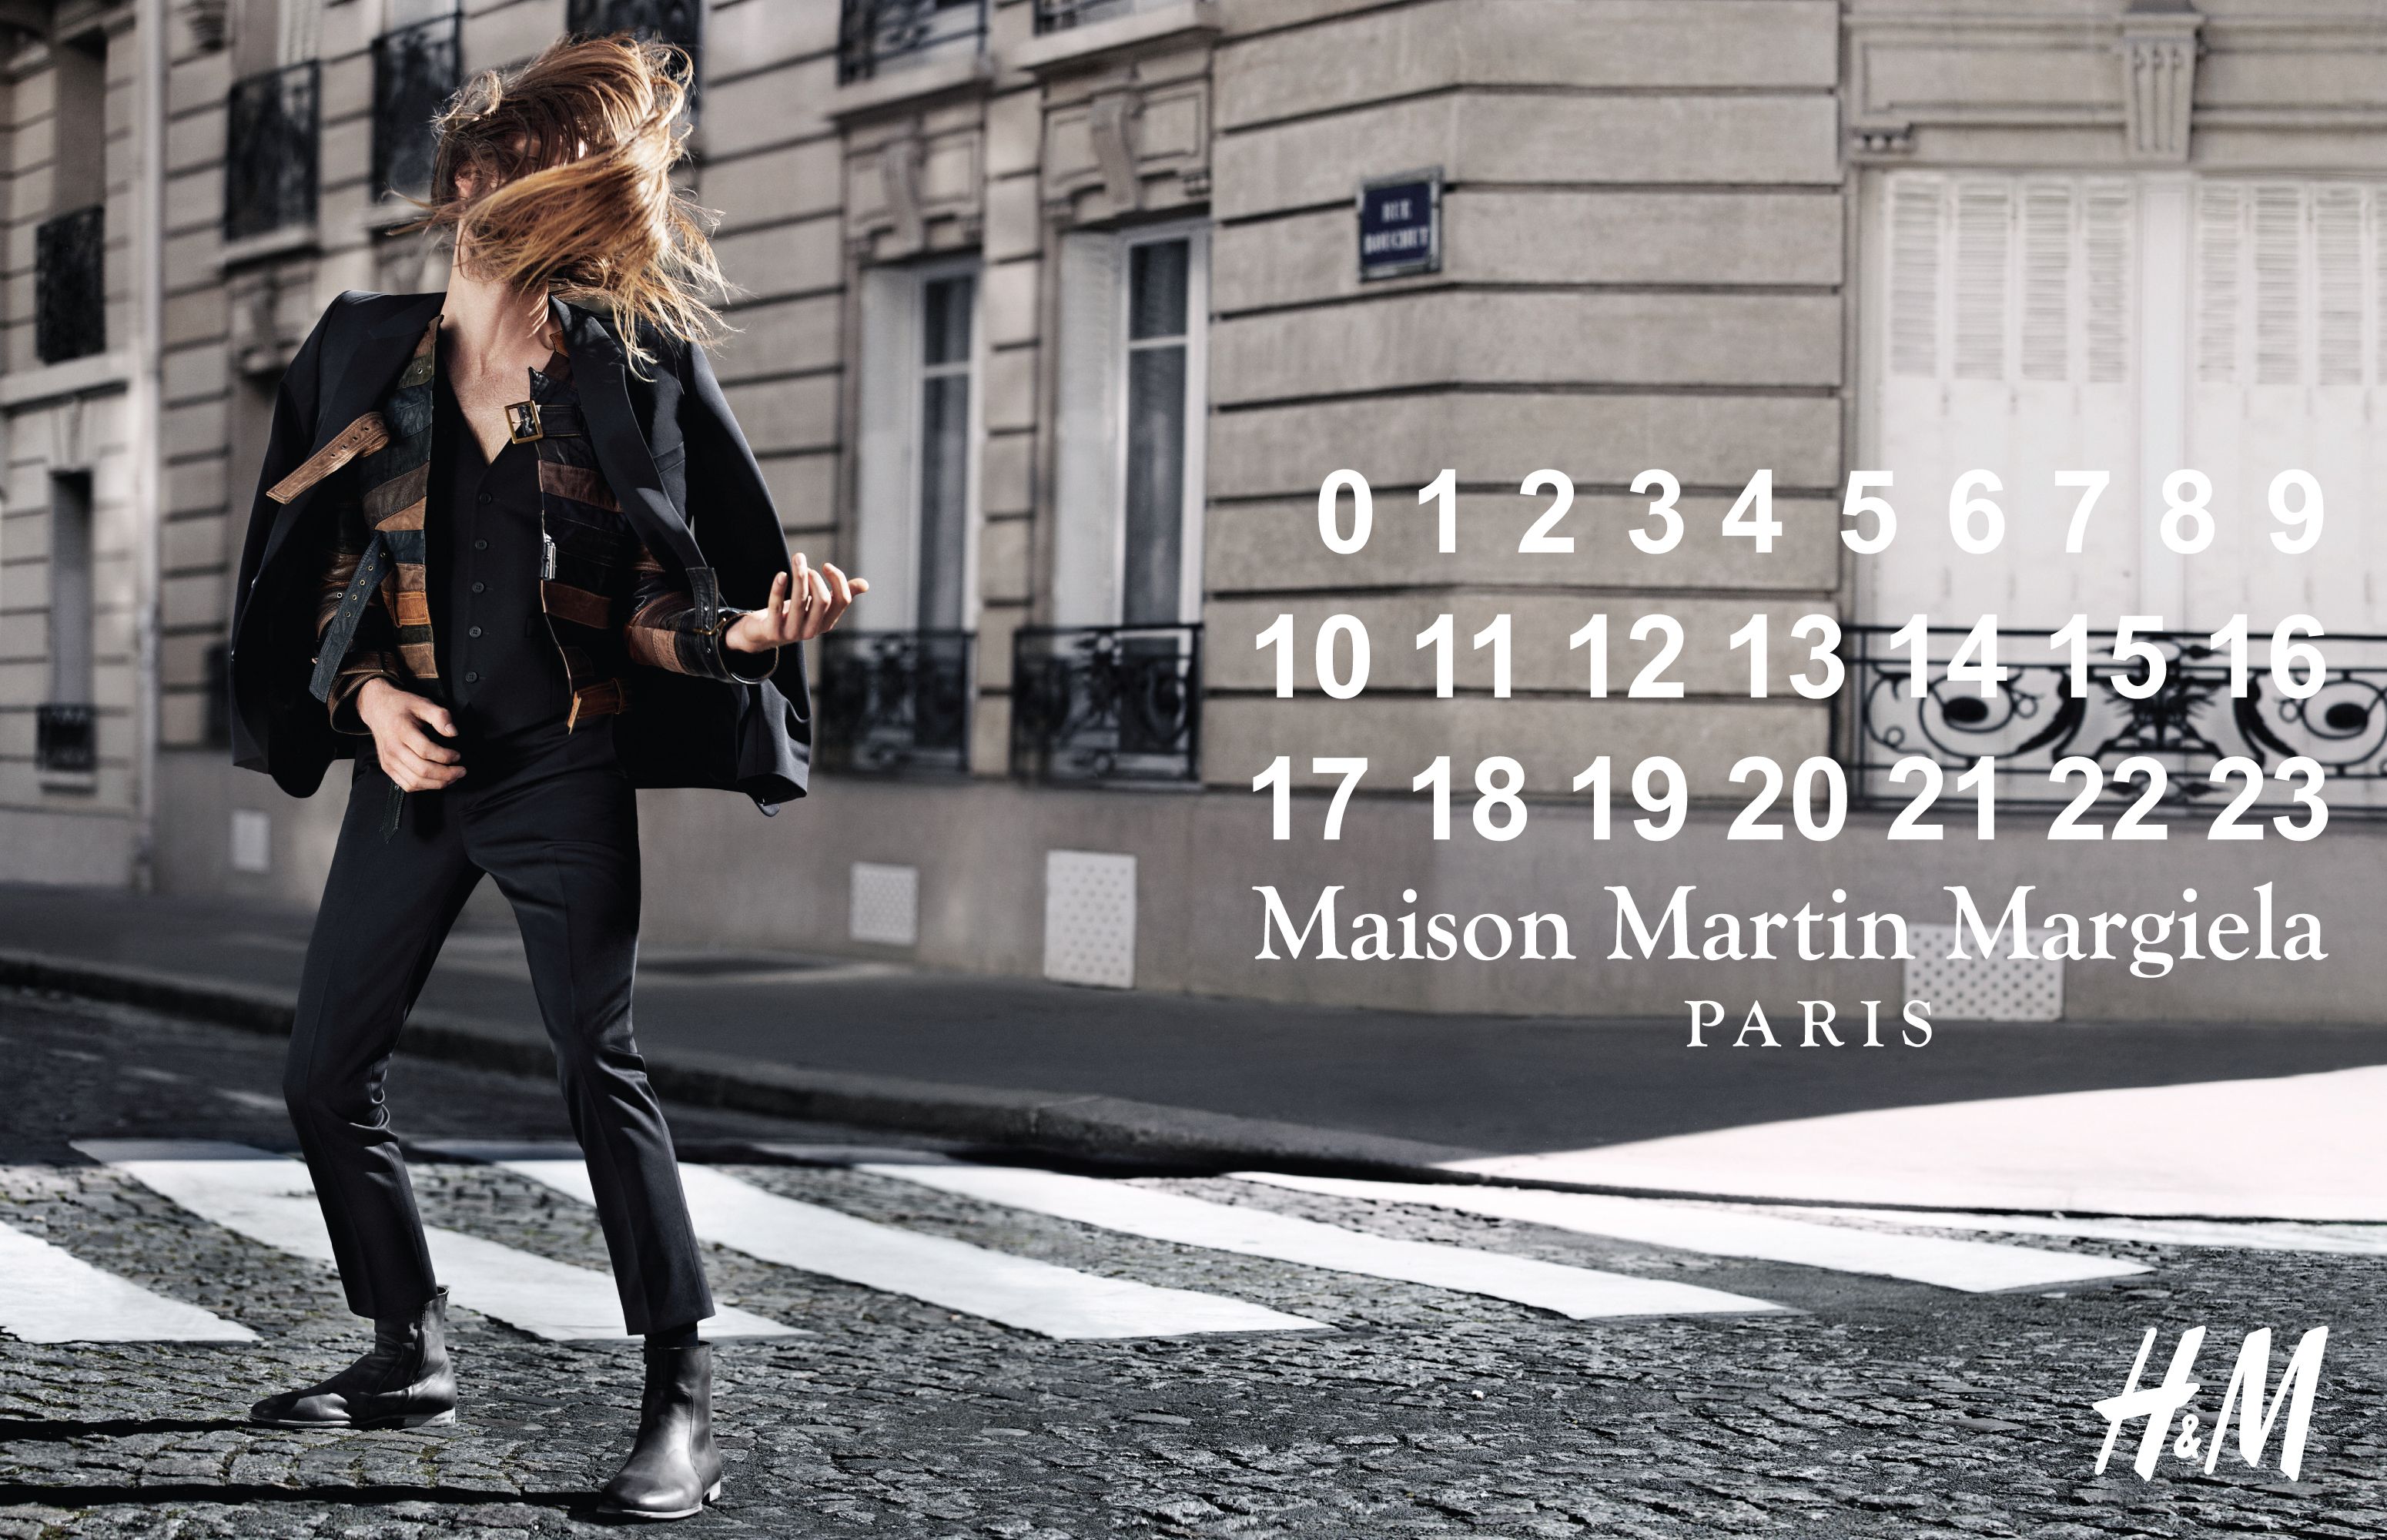 H&M Maison Martin Margiela - jessica craig martin styled by Sabina Schreder